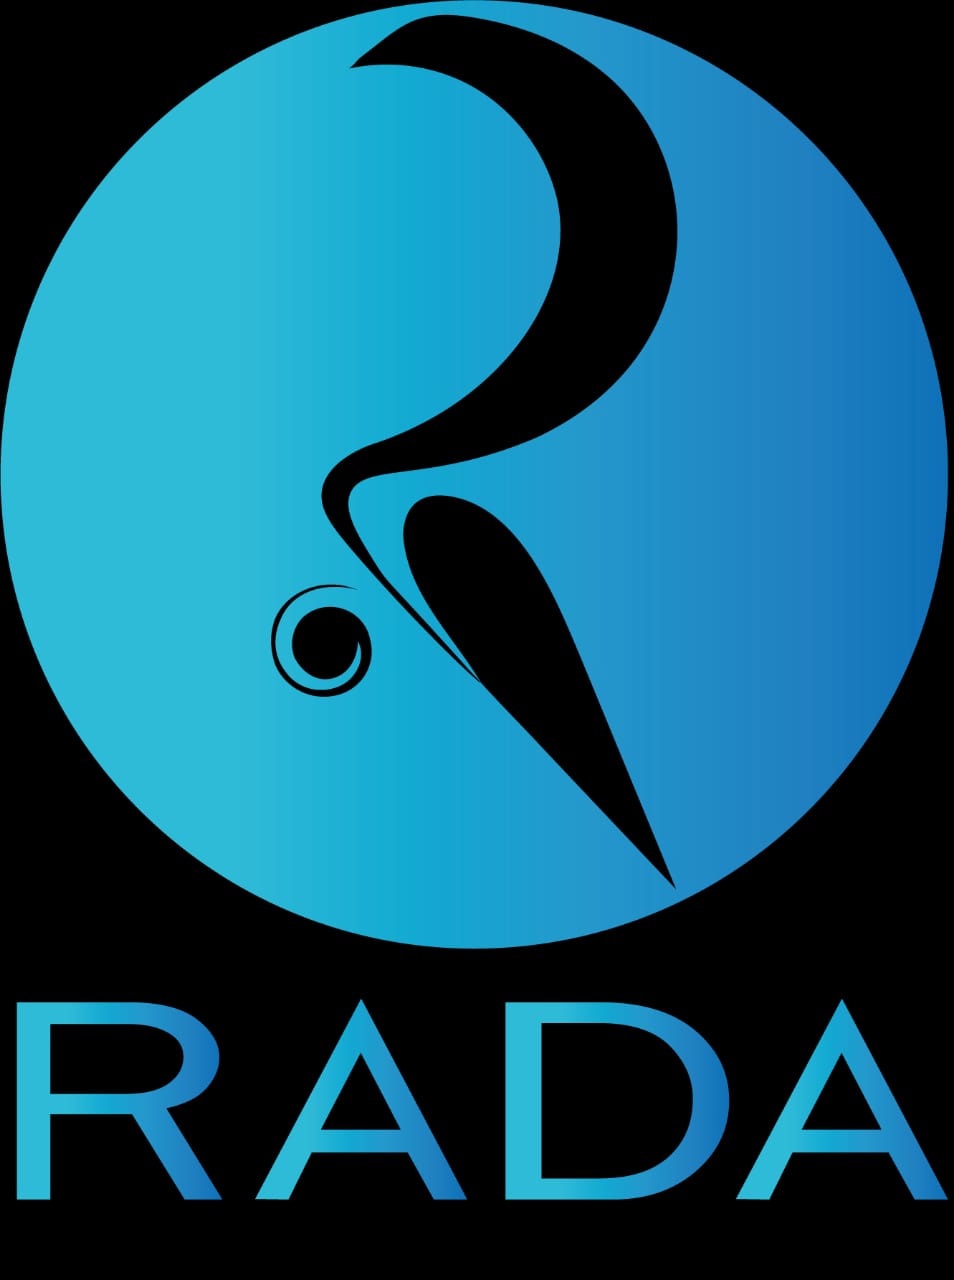 RADA logo.jpg